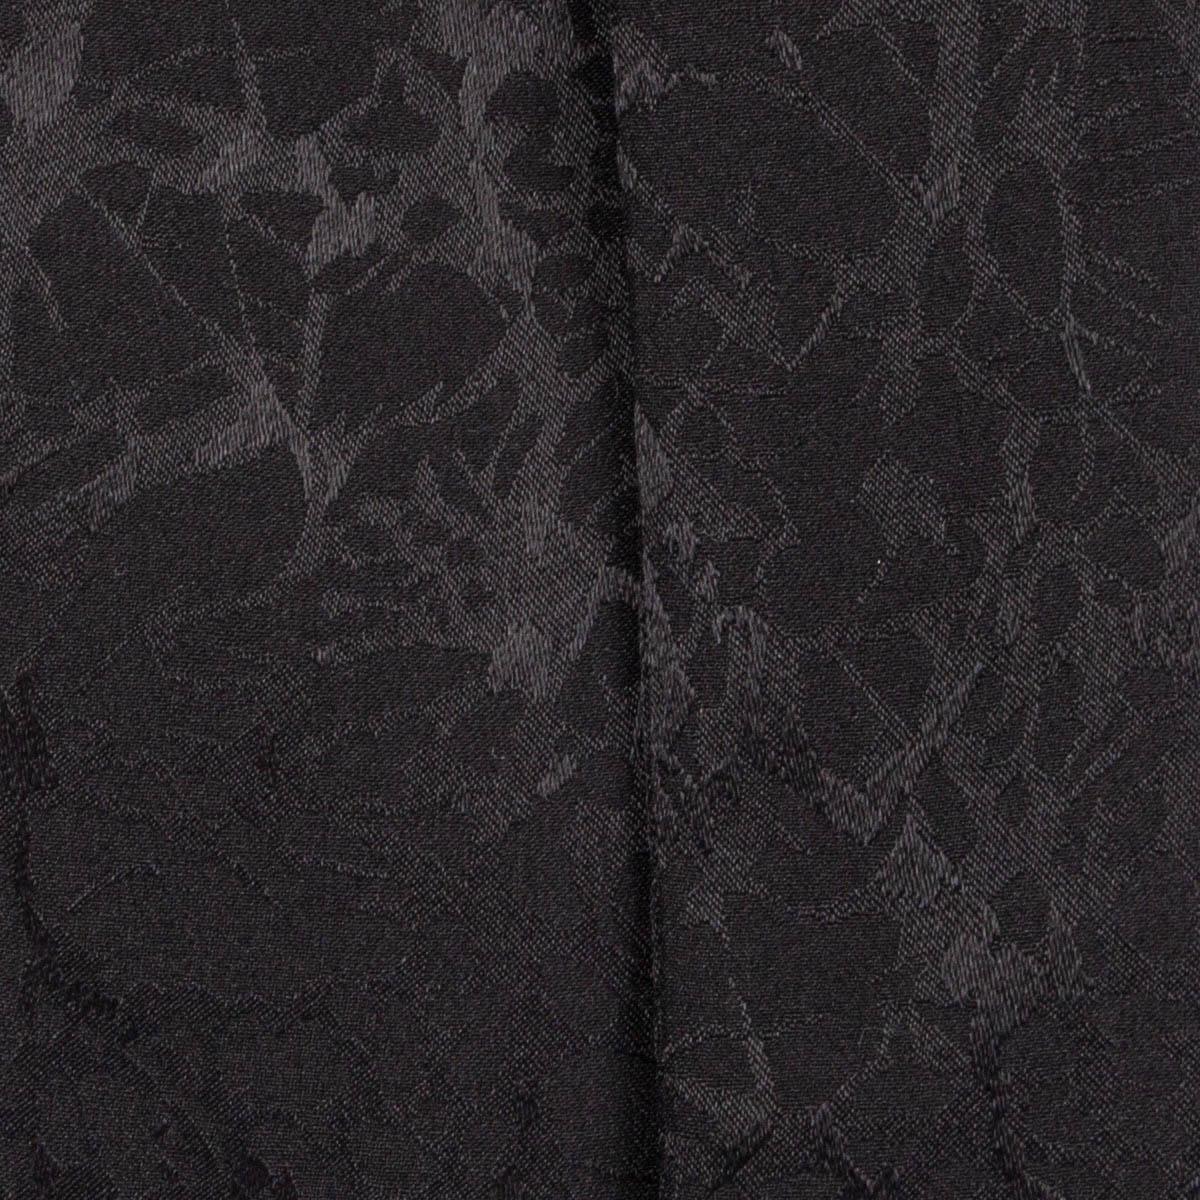 Black SAINT LAURENT black silk 2018 PUSSY BOW Blouse Shirt 36 XS